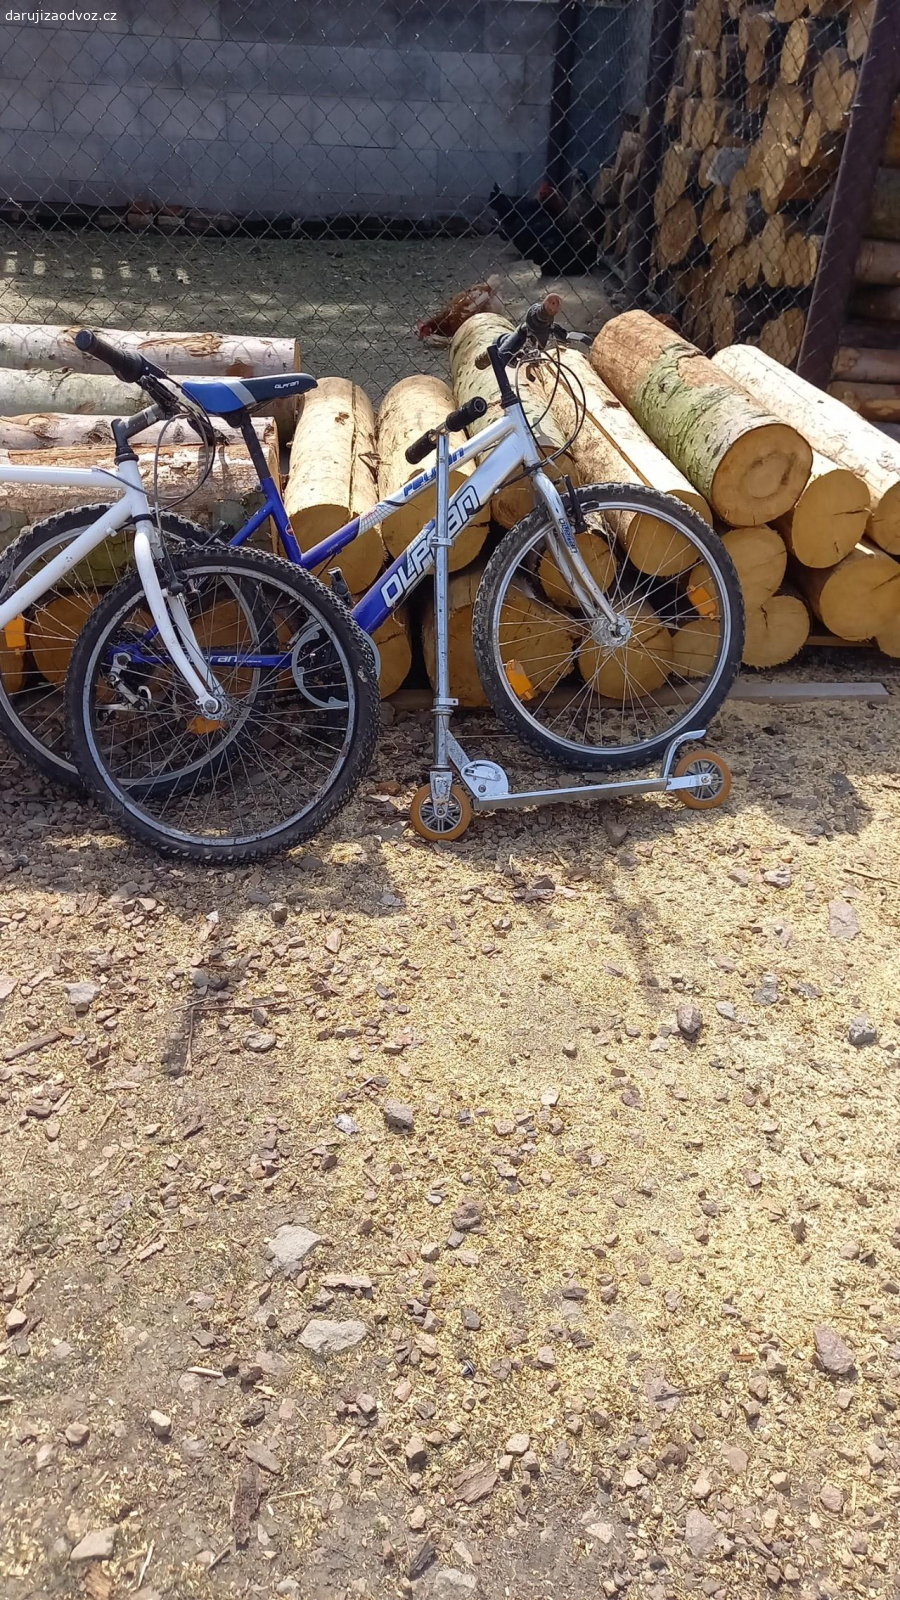 dětská kola a koloběžka. 2x tříčtvrteční dětské kolo a koloběžka, po menší  opravě pojízdné.